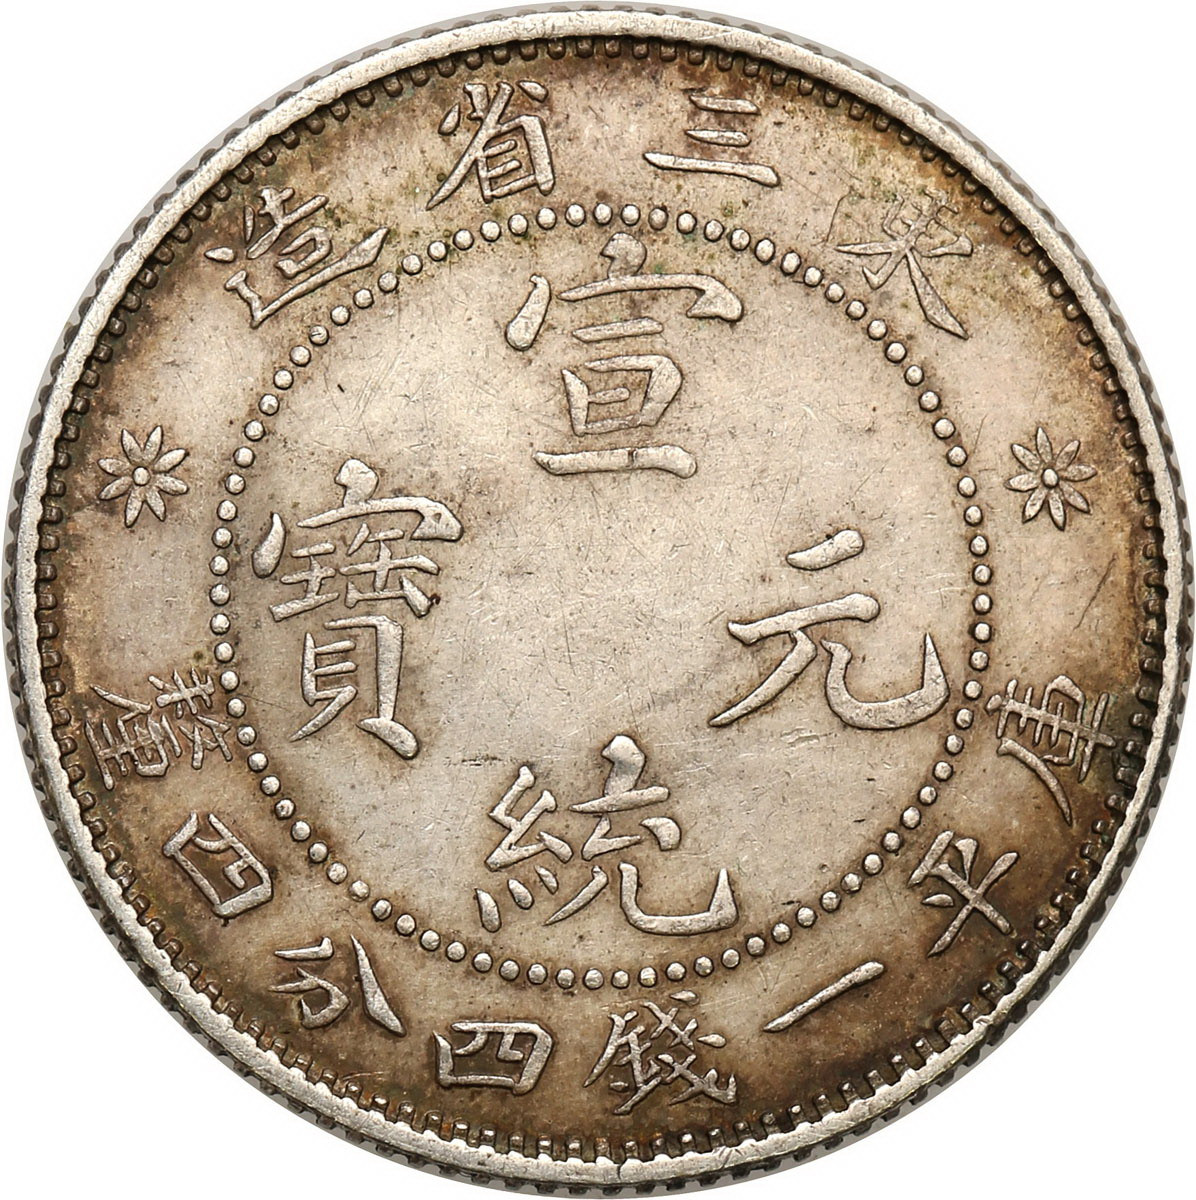 Chiny, Manchurian. 20 centów (1912-1913) NGC AU55 – RZADKIE